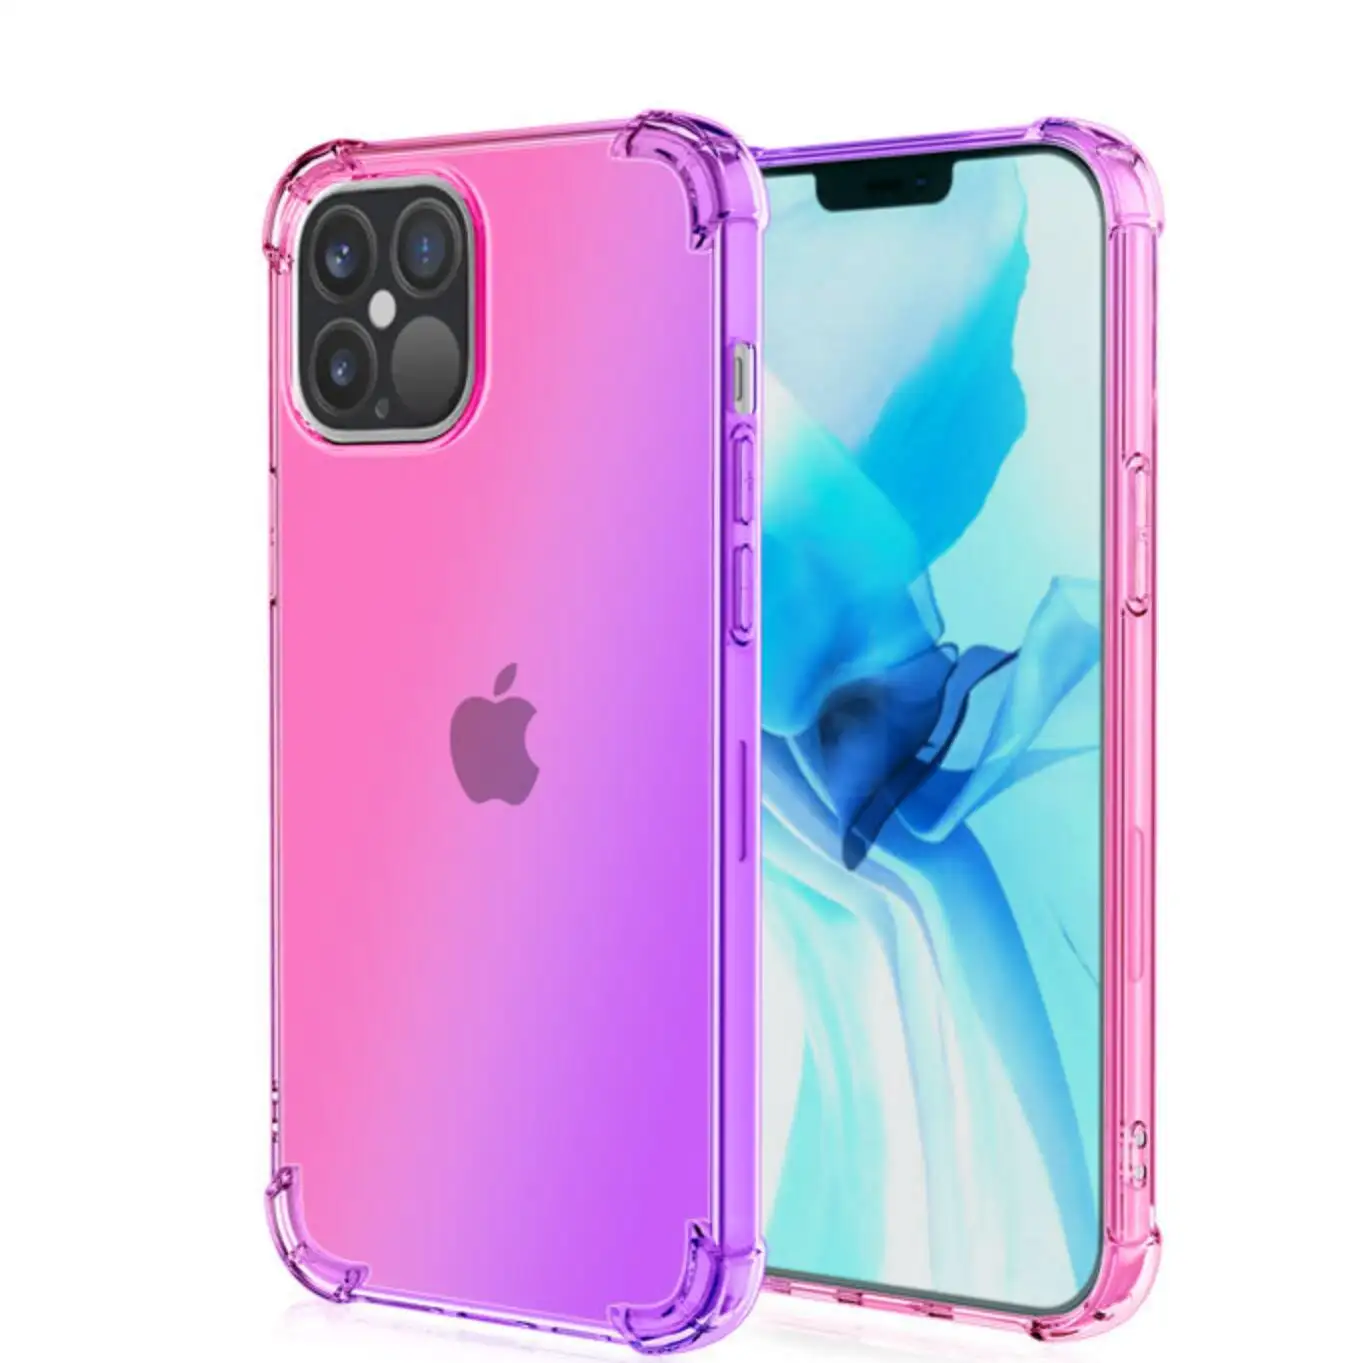 IPhone 14 vaka darbeye dayanıklı darbeye dayanıklı dört köşe temizle renk değiştiren TPU telefon iPhone için kılıf ile gökkuşağı renkleri